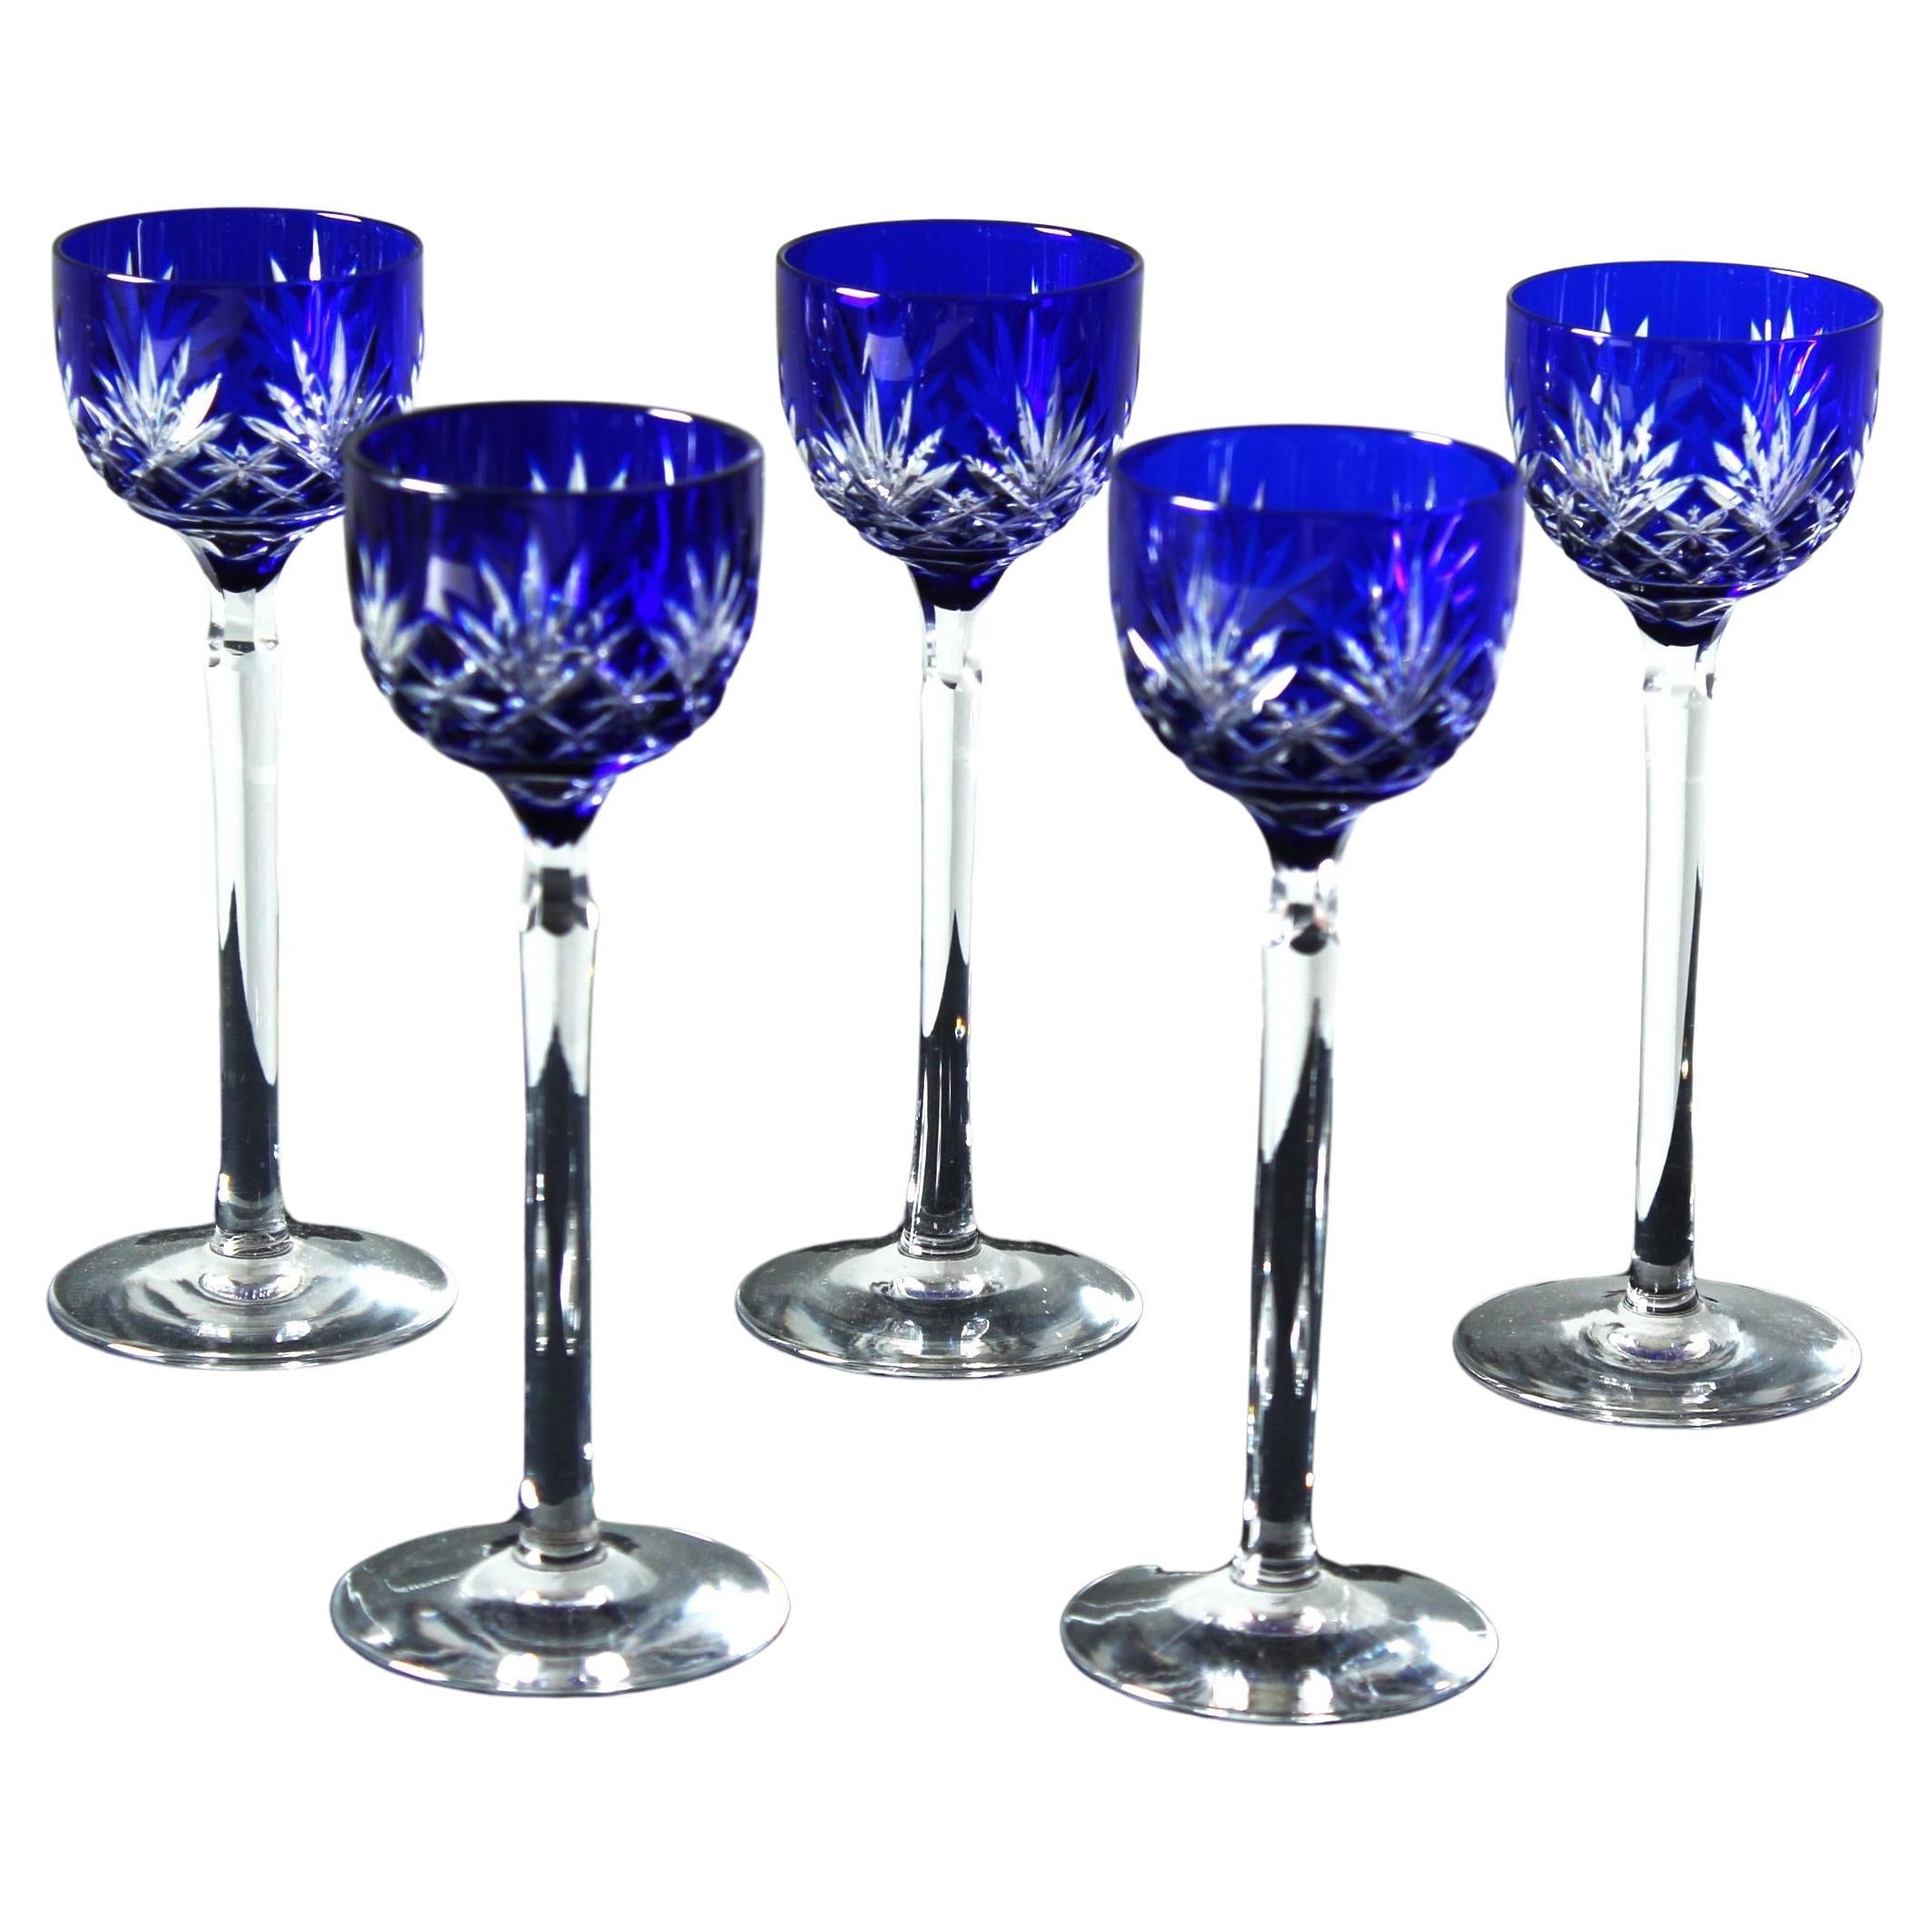 Set Of 5 Royal Blue Liqueur Glasses, 1880s, France, Crystal Glass